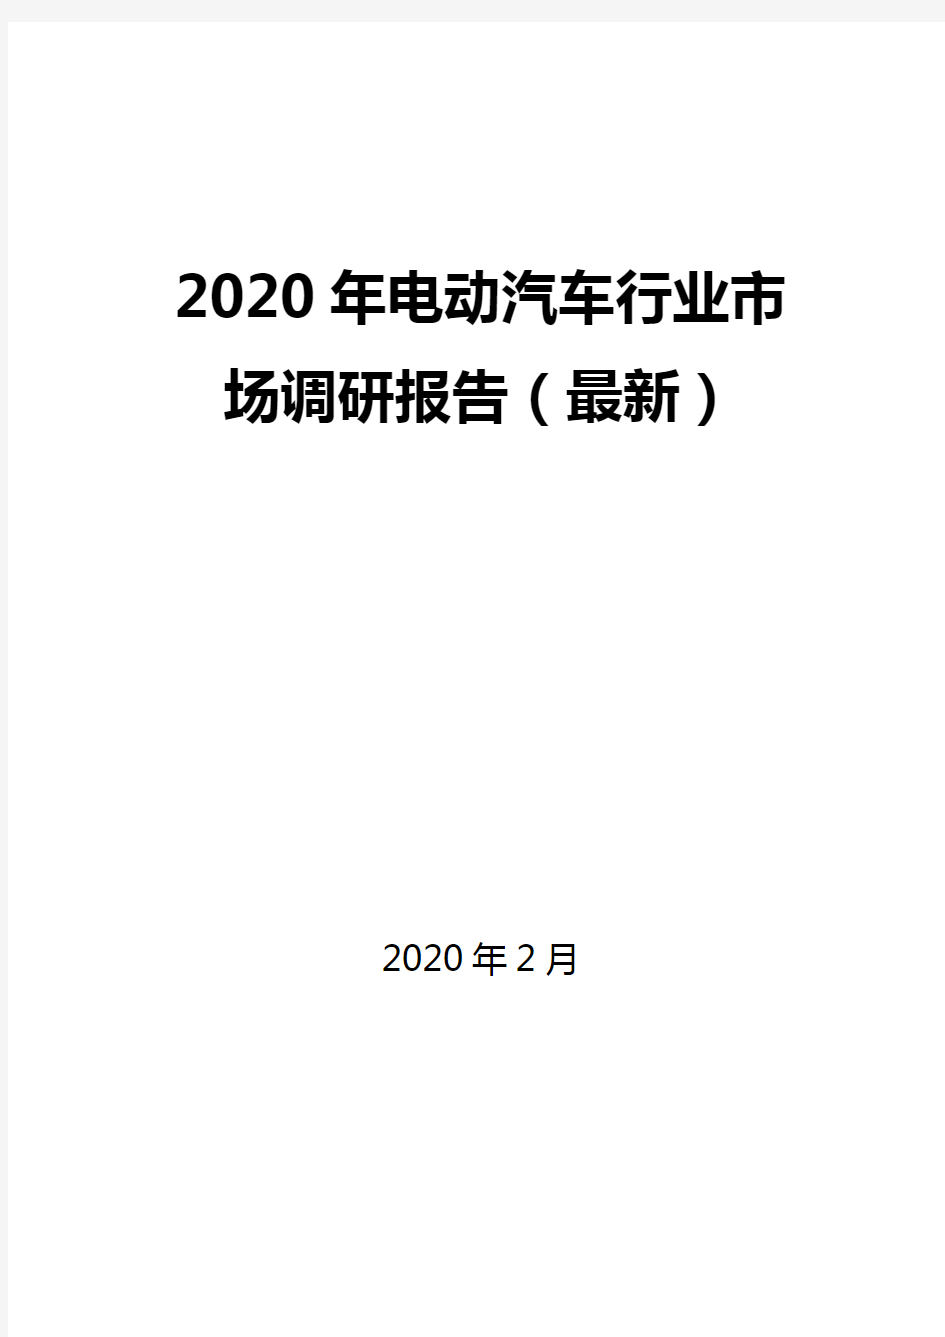 2020年电动汽车行业市场调研报告(最新)